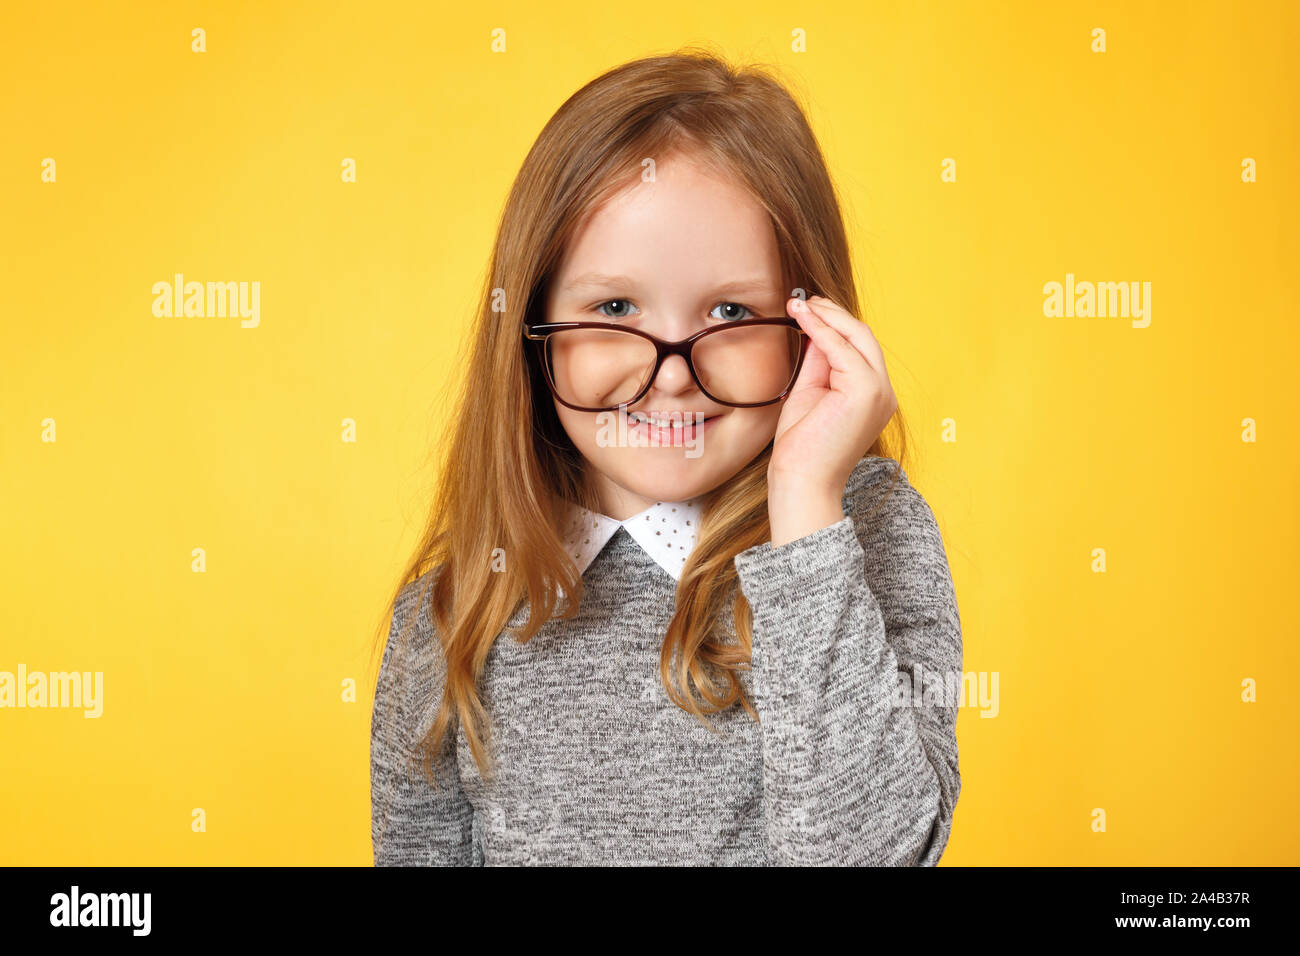 Kluges Mädchen Schulmädchen mit Brille. Ein Kind in einem grauen pullover auf gelbem Hintergrund. Stockfoto